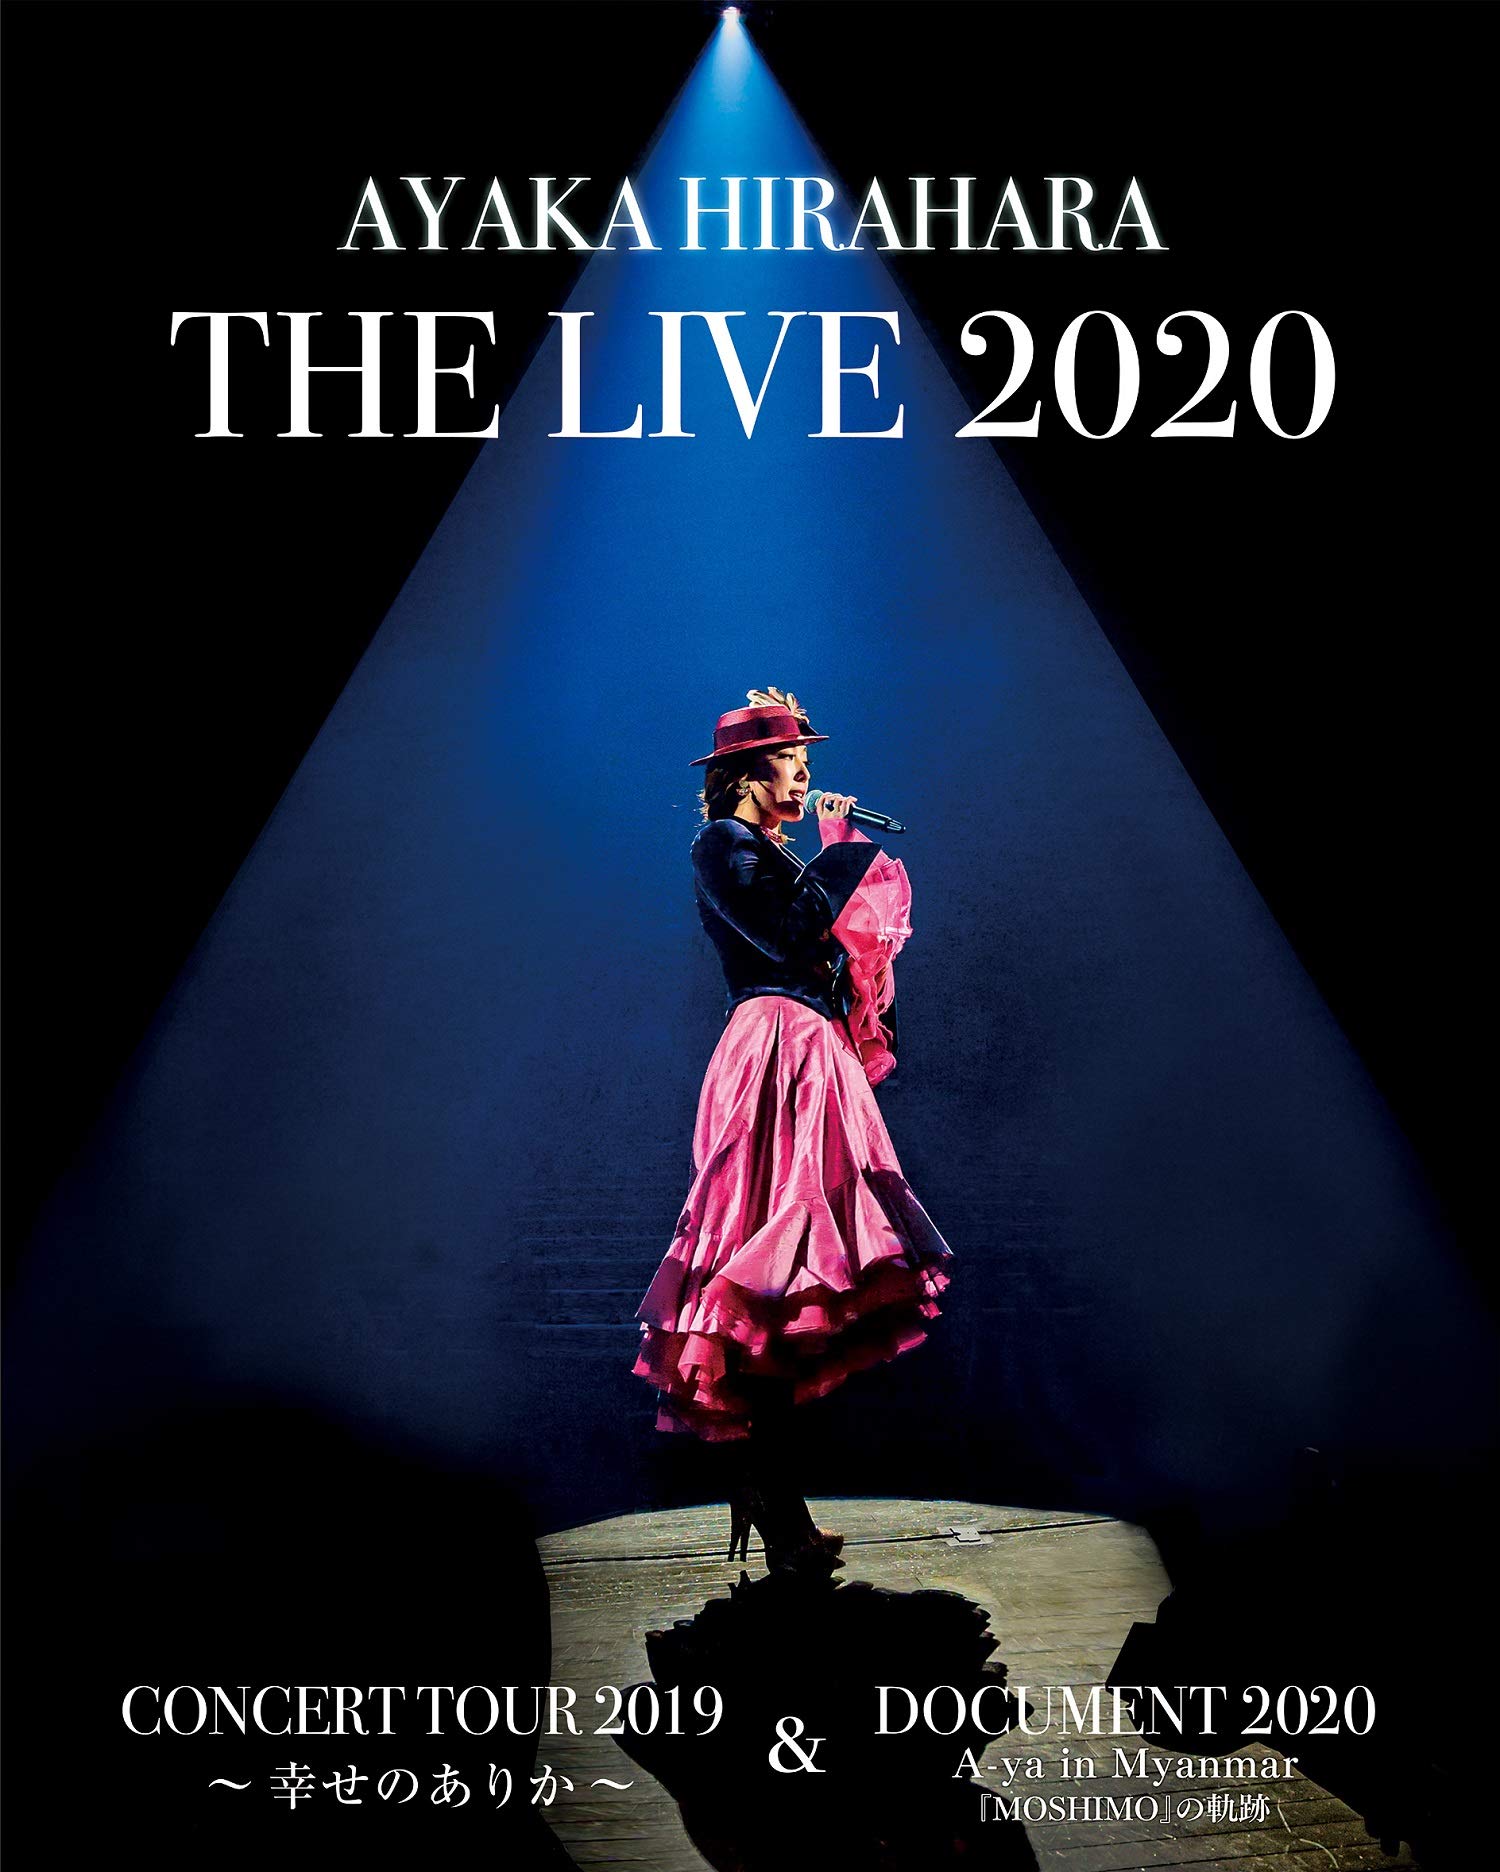 平原綾香 THE LIVE 2020 CONCERT TOUR 2019 ~ 幸せのありか ~ & DOCUMENT 2020 A-ya in Myanmar『MOSHIMO』の軌跡[Blu-ray]